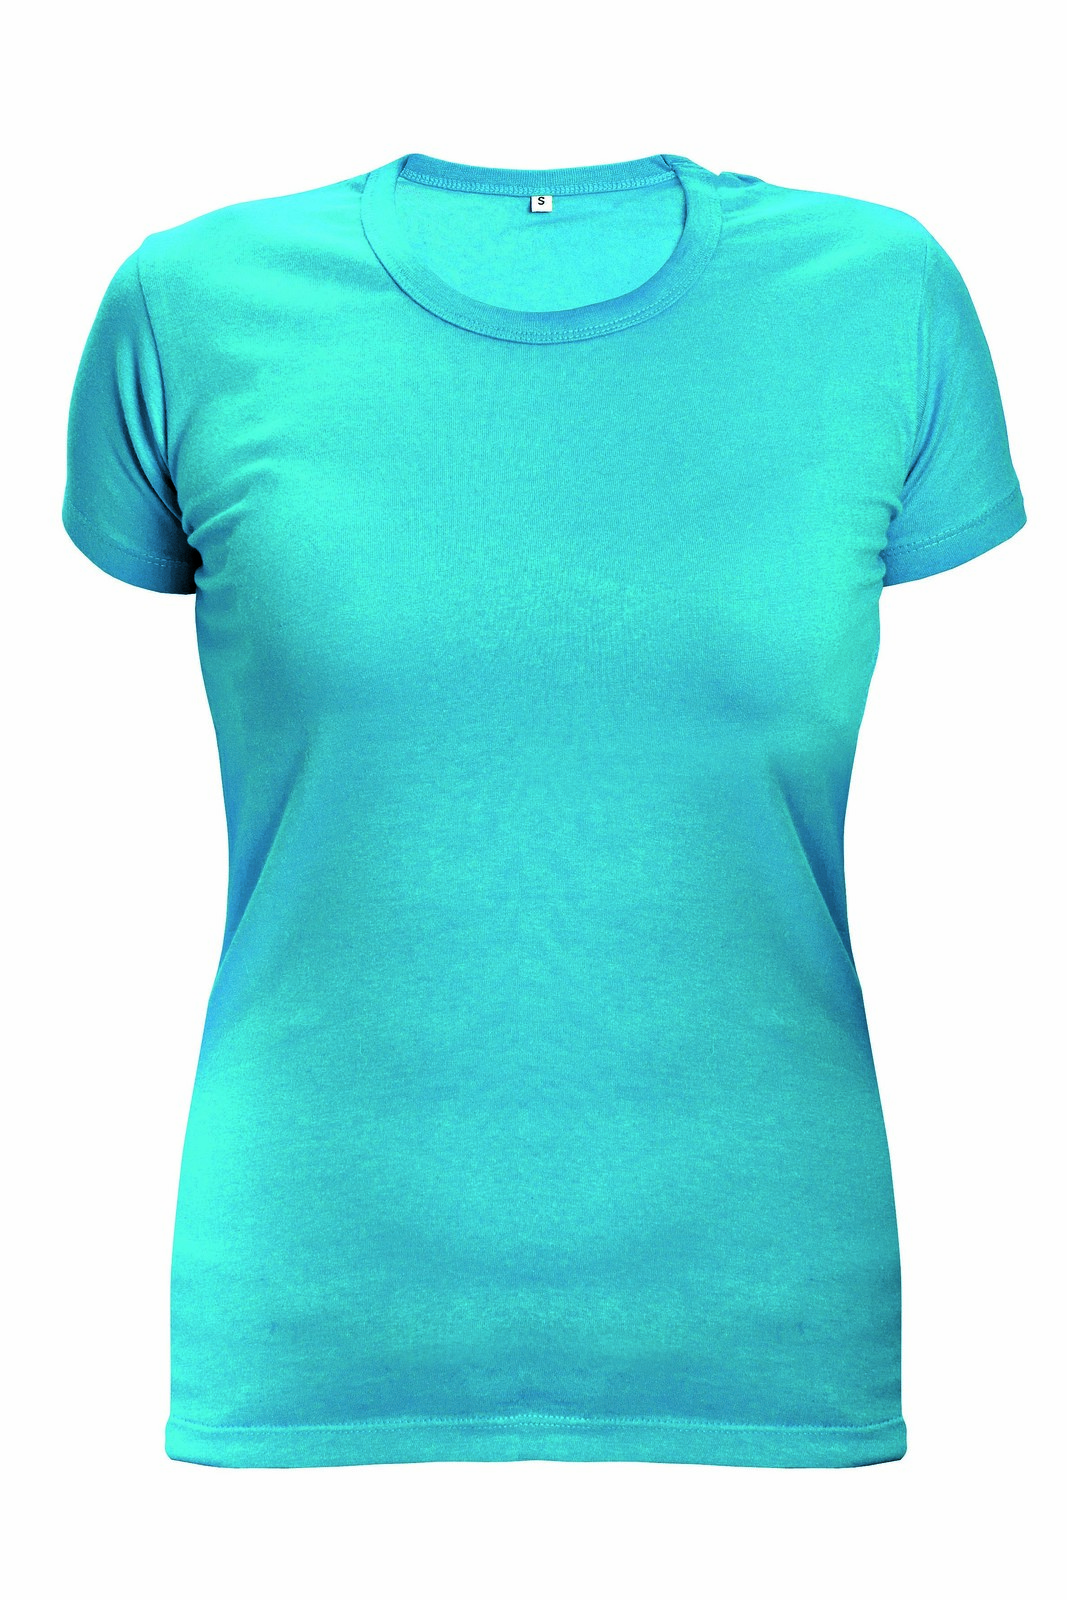 Dámske tričko s krátkym rukávom Surma Lady - veľkosť: XXL, farba: tyrkysová